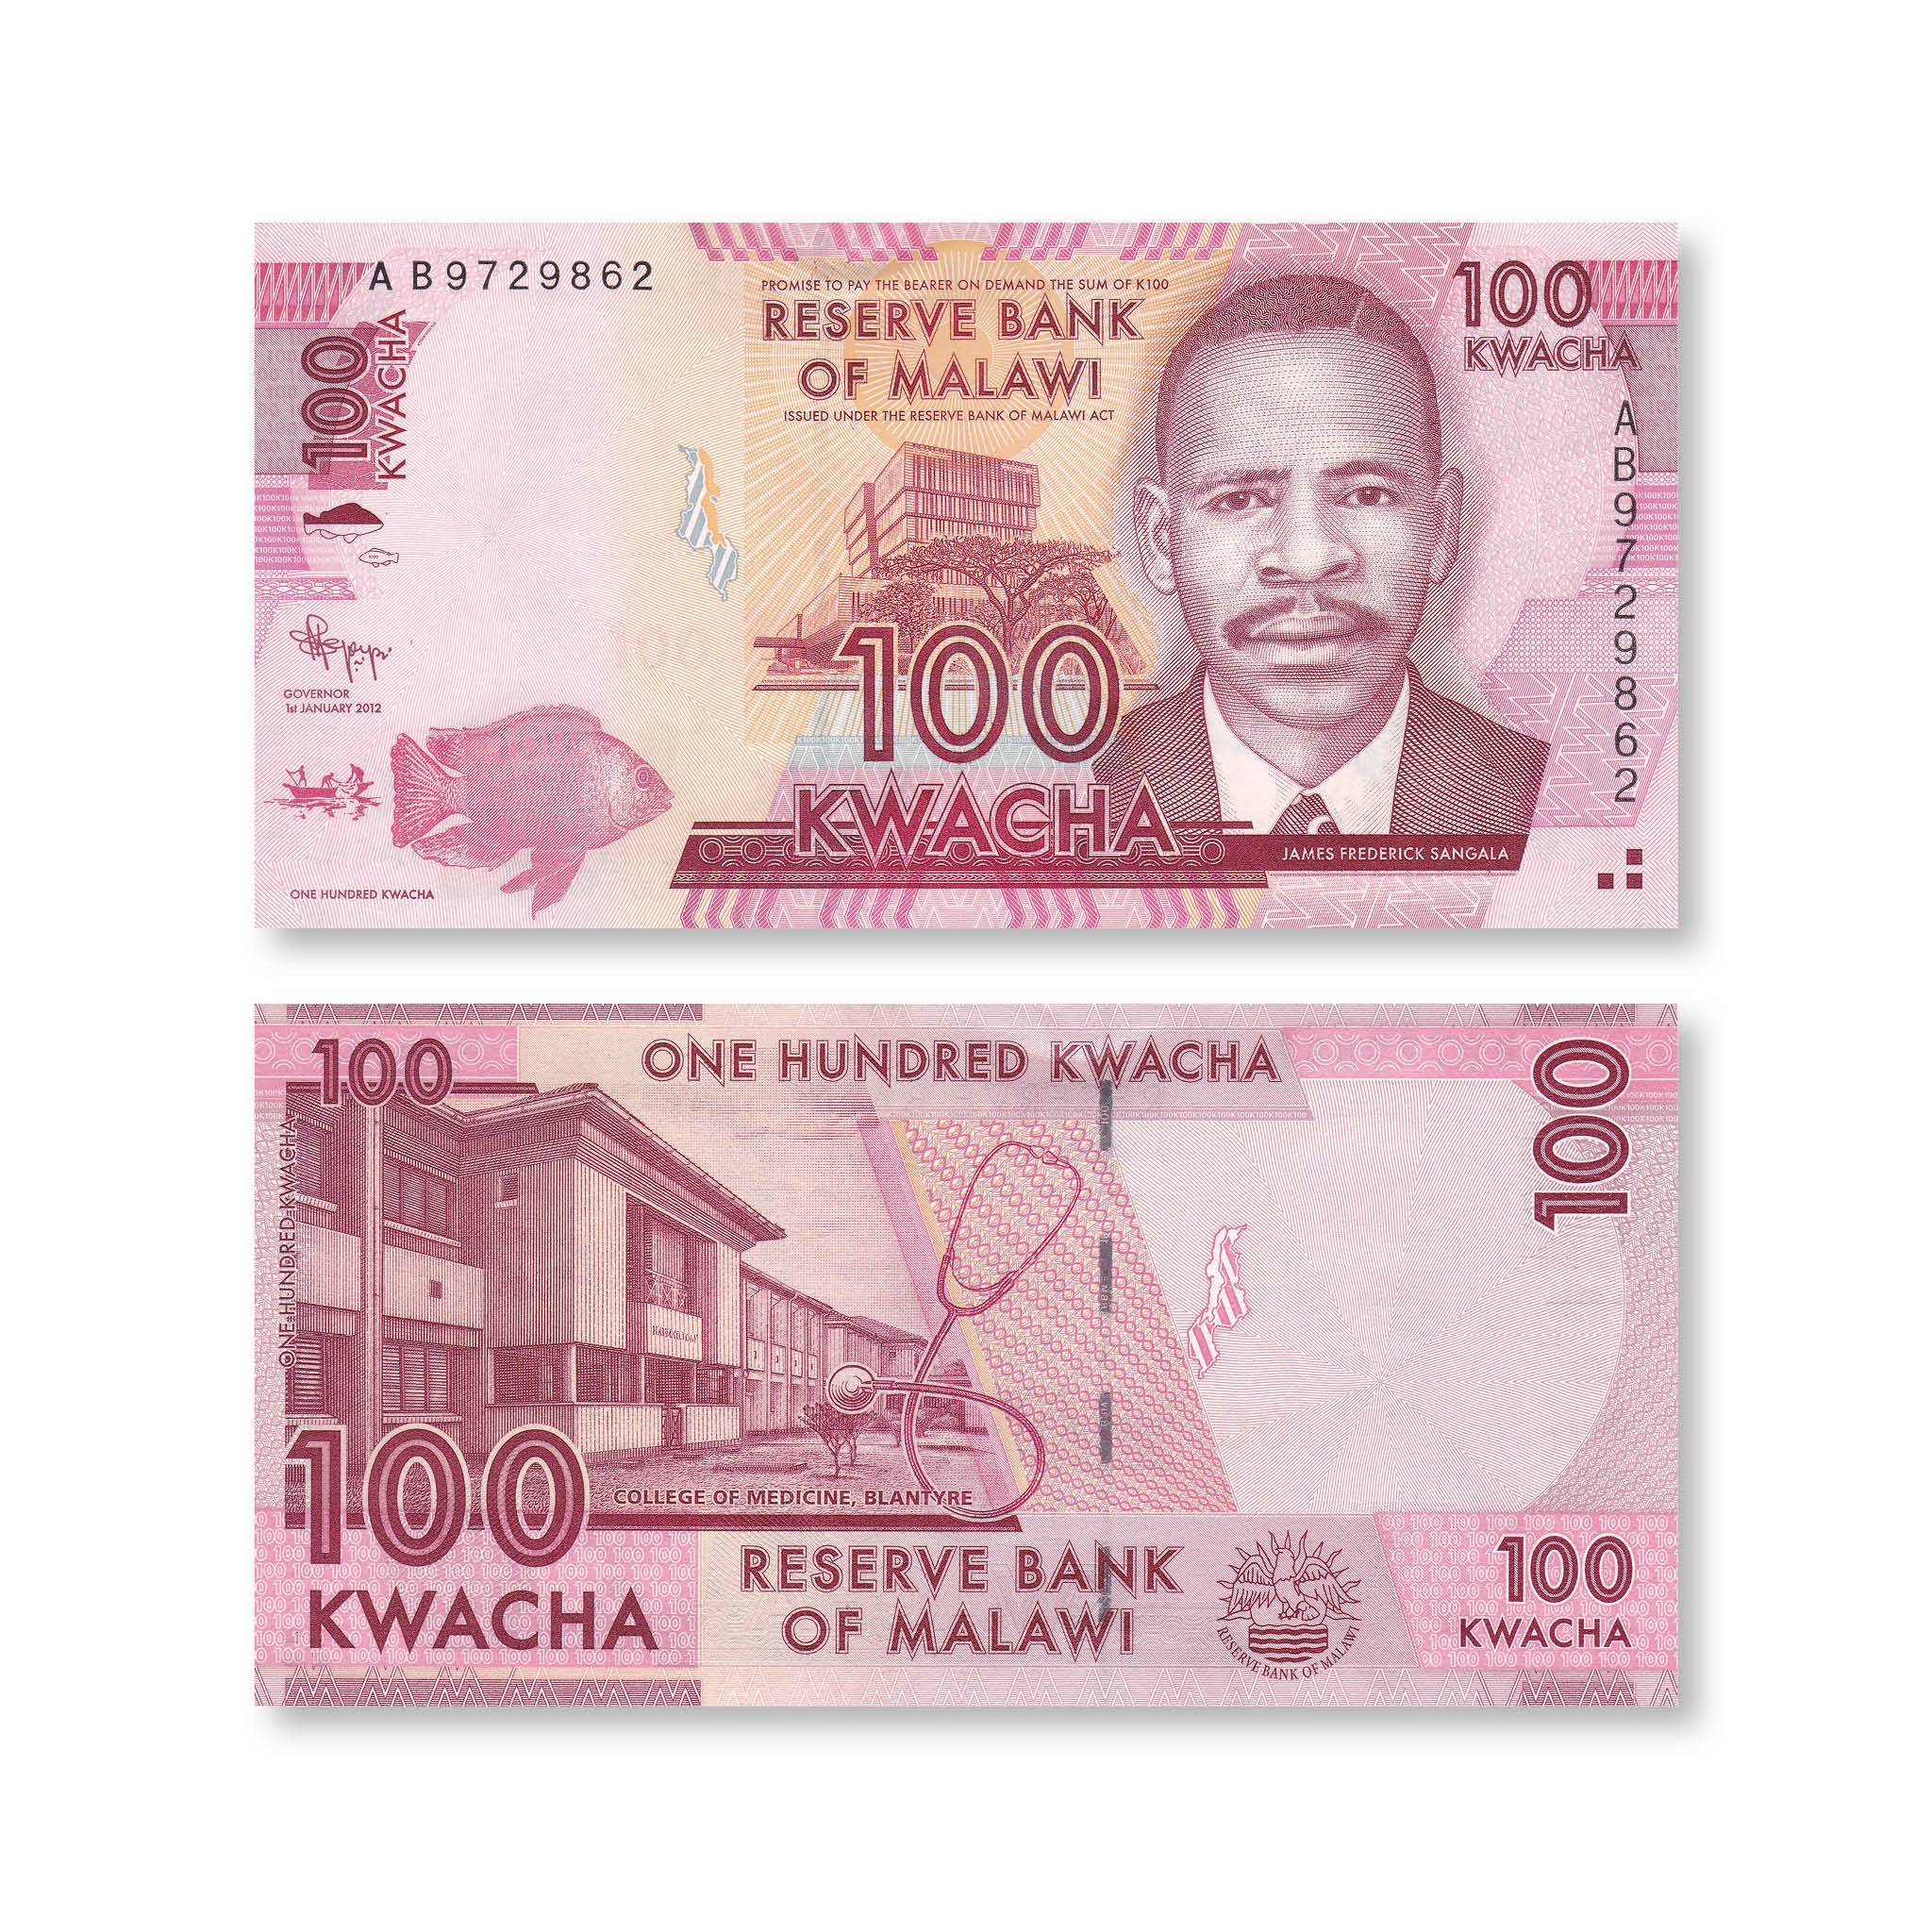 Malawi 100 Kwacha, 2012, B152a, P59a, UNC - Robert's World Money - World Banknotes